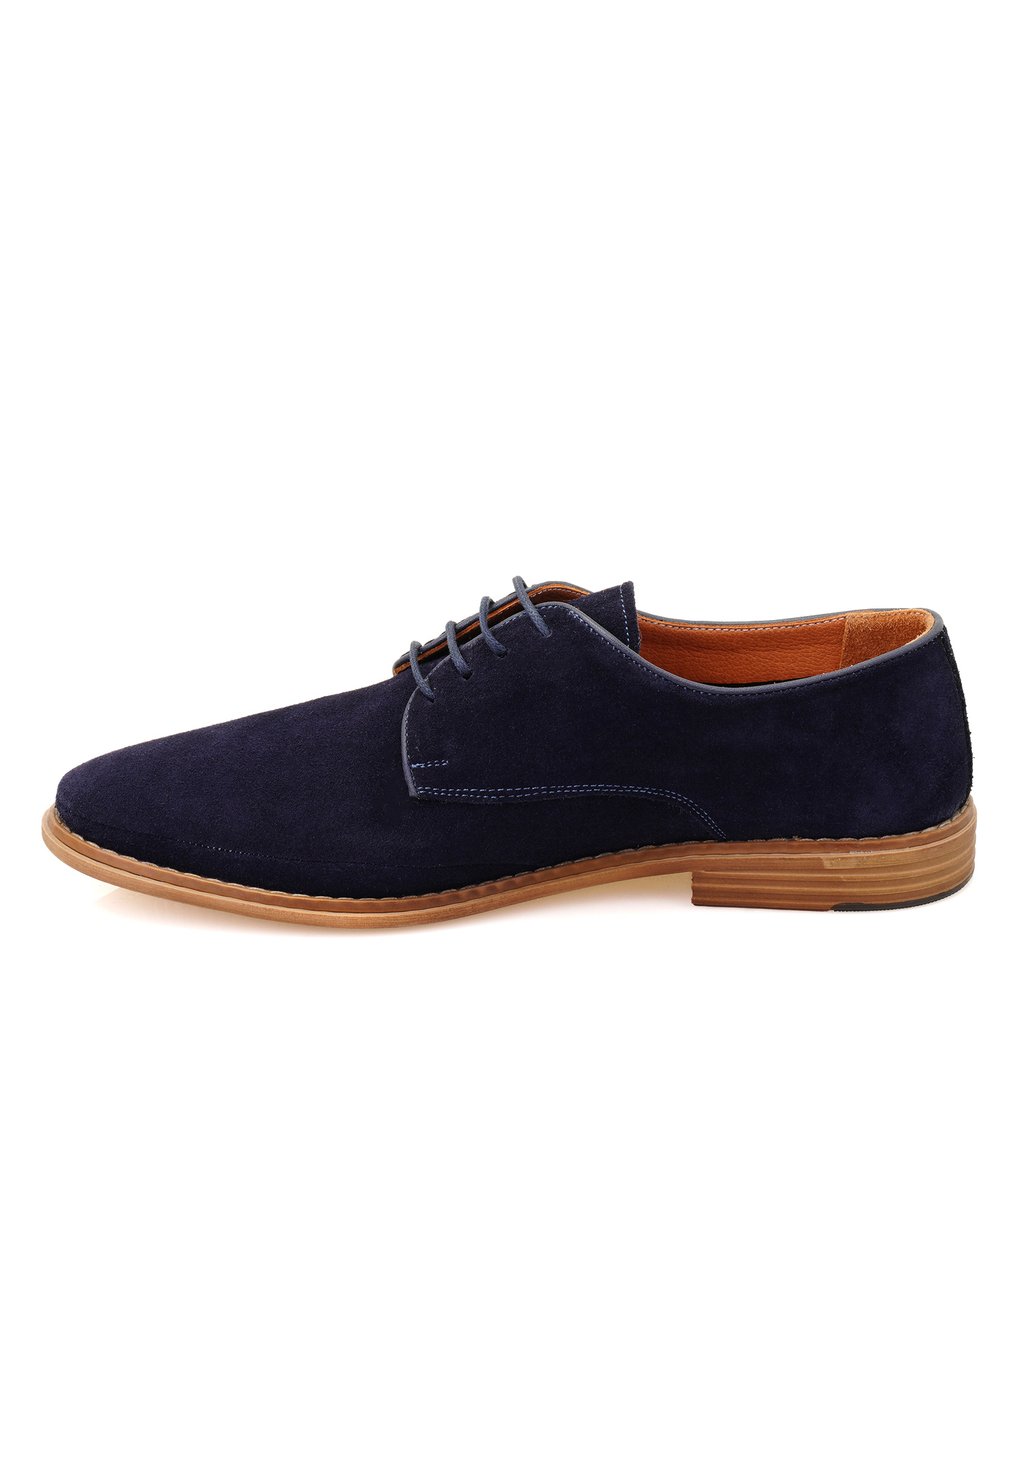 Спортивные туфли на шнуровке Desa, цвет dark blue спортивные туфли на шнуровке leather friboo цвет dark blue